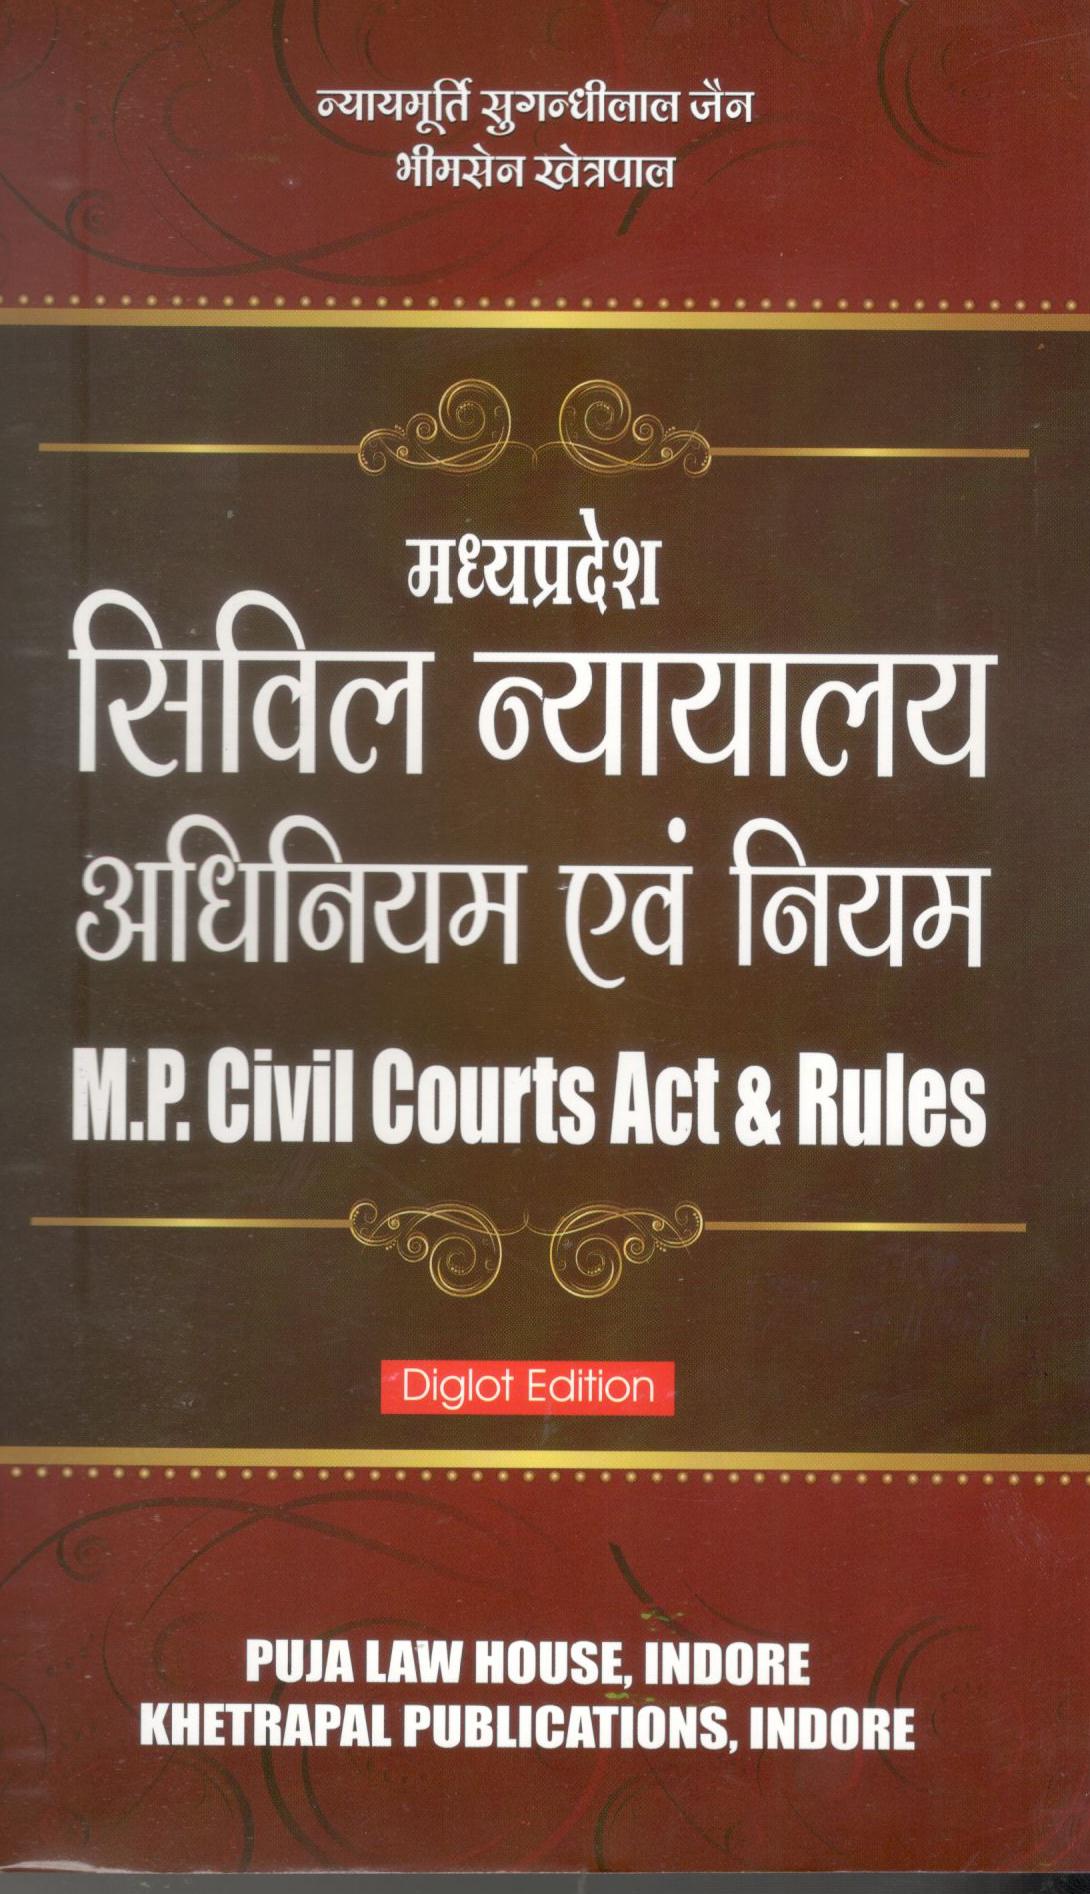  Buy मध्य प्रदेश सिविल न्यायालय अधिनियम एवं नियम / Madhya Pradesh Civil Court Act & Rules